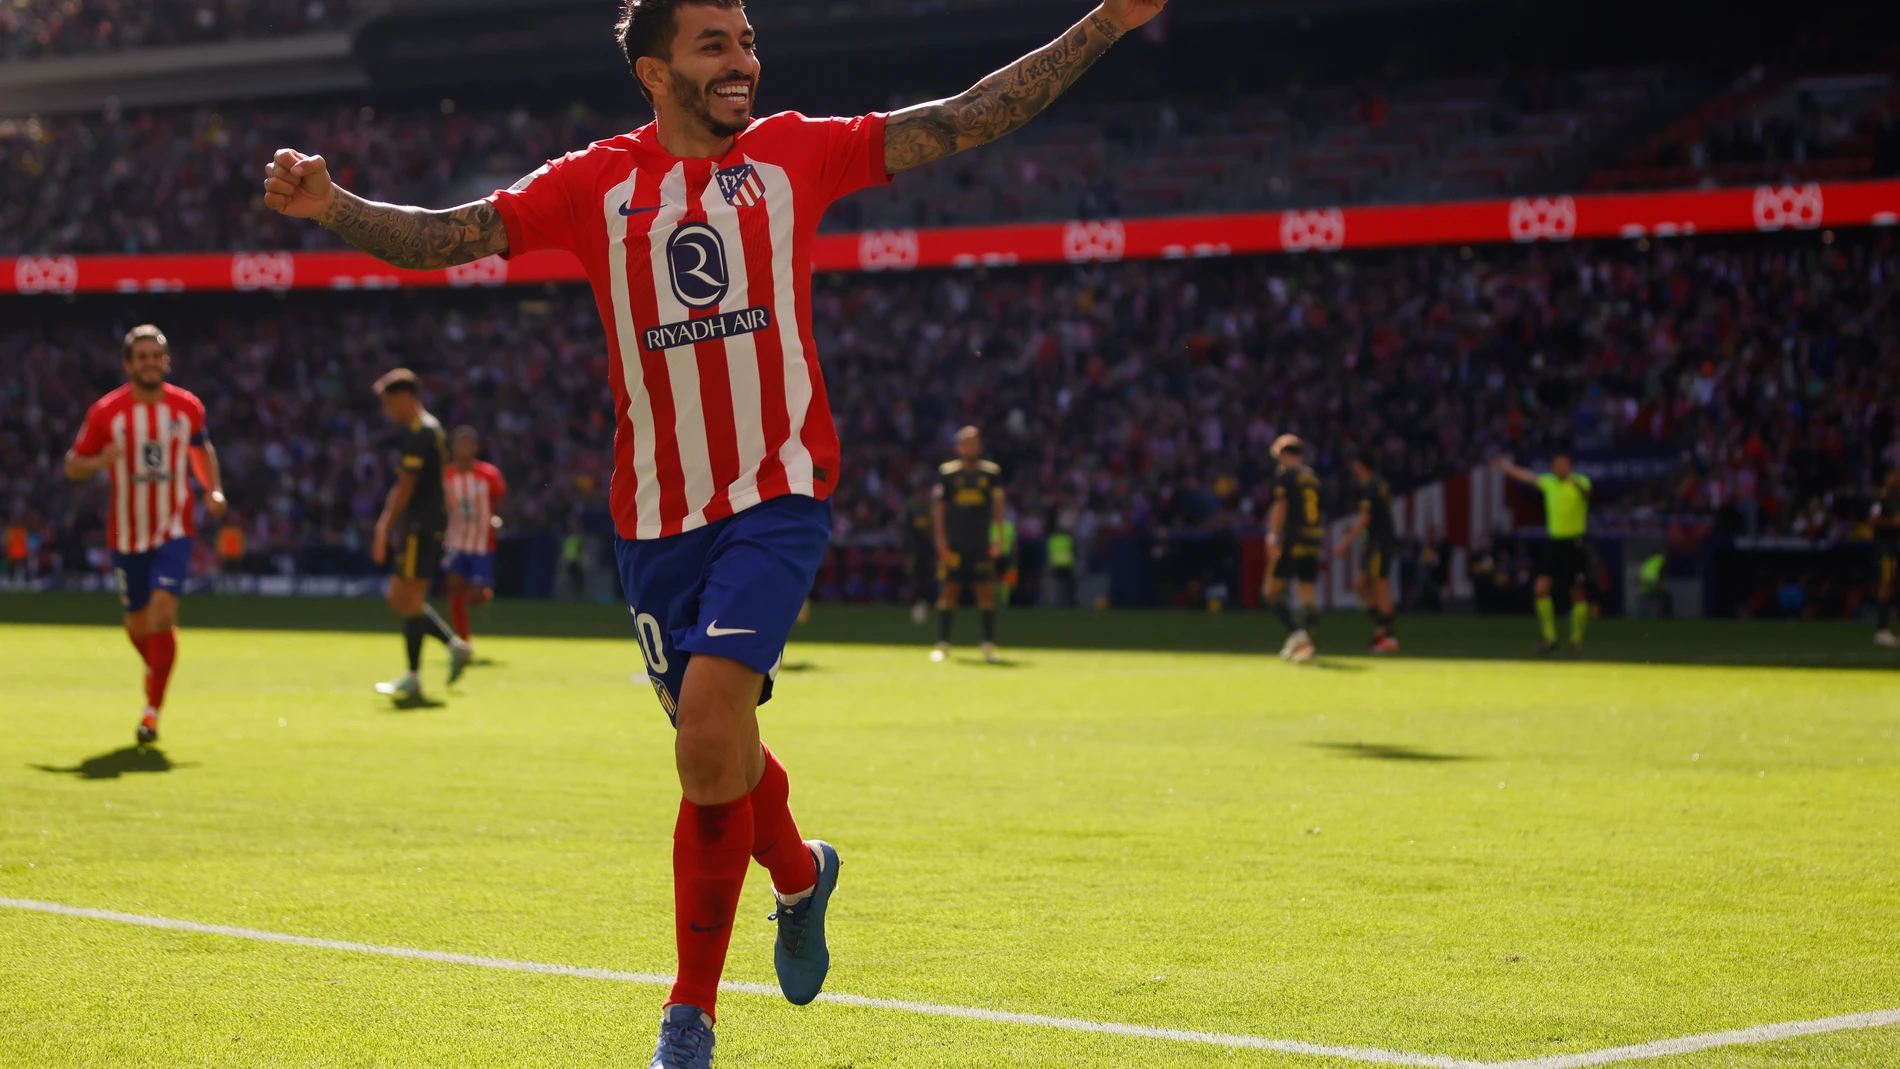 Tercer gol del Atlético de Madrid anotado por Correa durante el partido contra la UD Las Palmas @Gonzalo Pérez Mata 